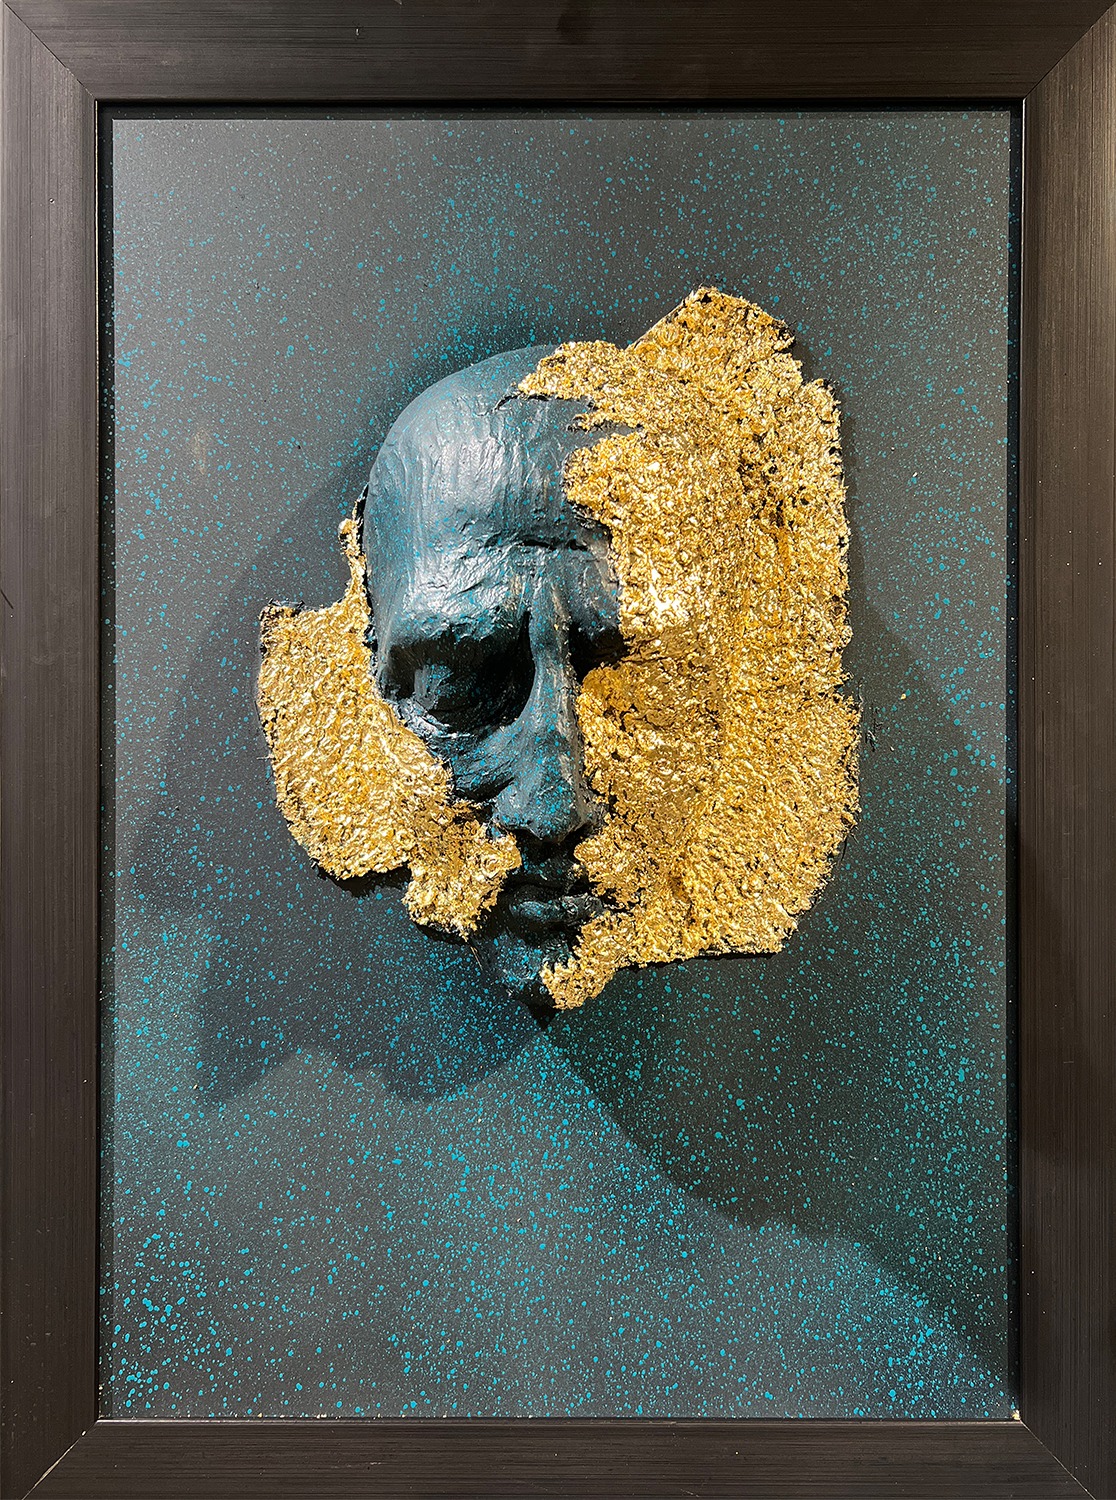 Artist: Hidayat Marwat<br> Title: Transcentdent/ Ethereal<br> Medium: Fiber Glass, Gold Leaf, Wooden Frame<br> Size: 24 x 18 In